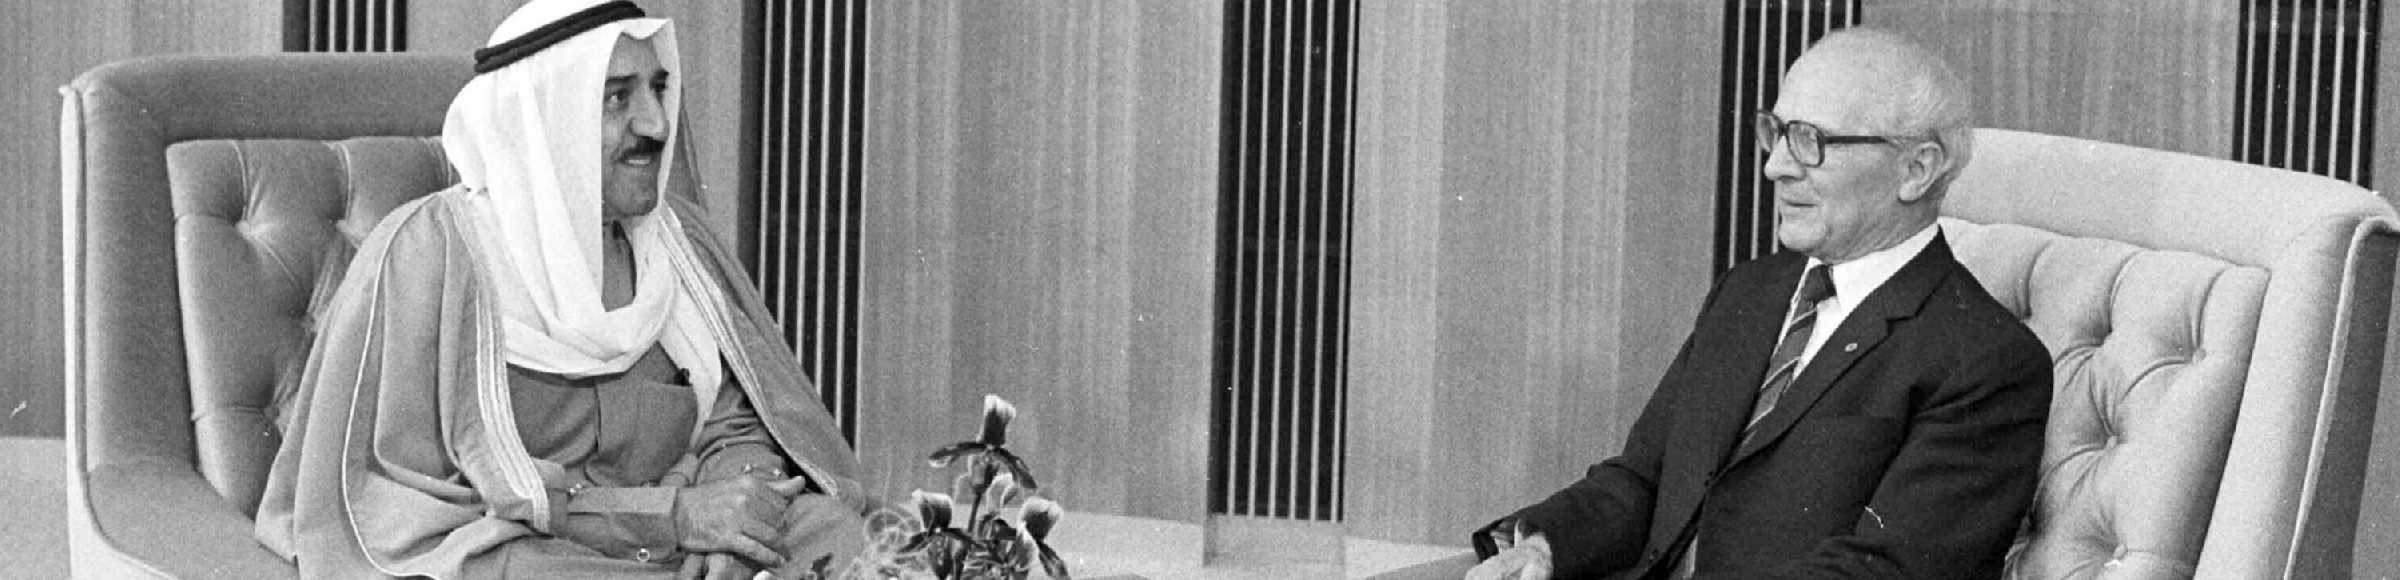 Scheich Sheikh Saad Al-Abdullah Al-Sabah beim Generalsekrätär und Vorsitzenden des Staatsrates Erich Honecker in Berlin auf dem Gebiet der ehemaligen DDR, Deutsche Demokratische Republik